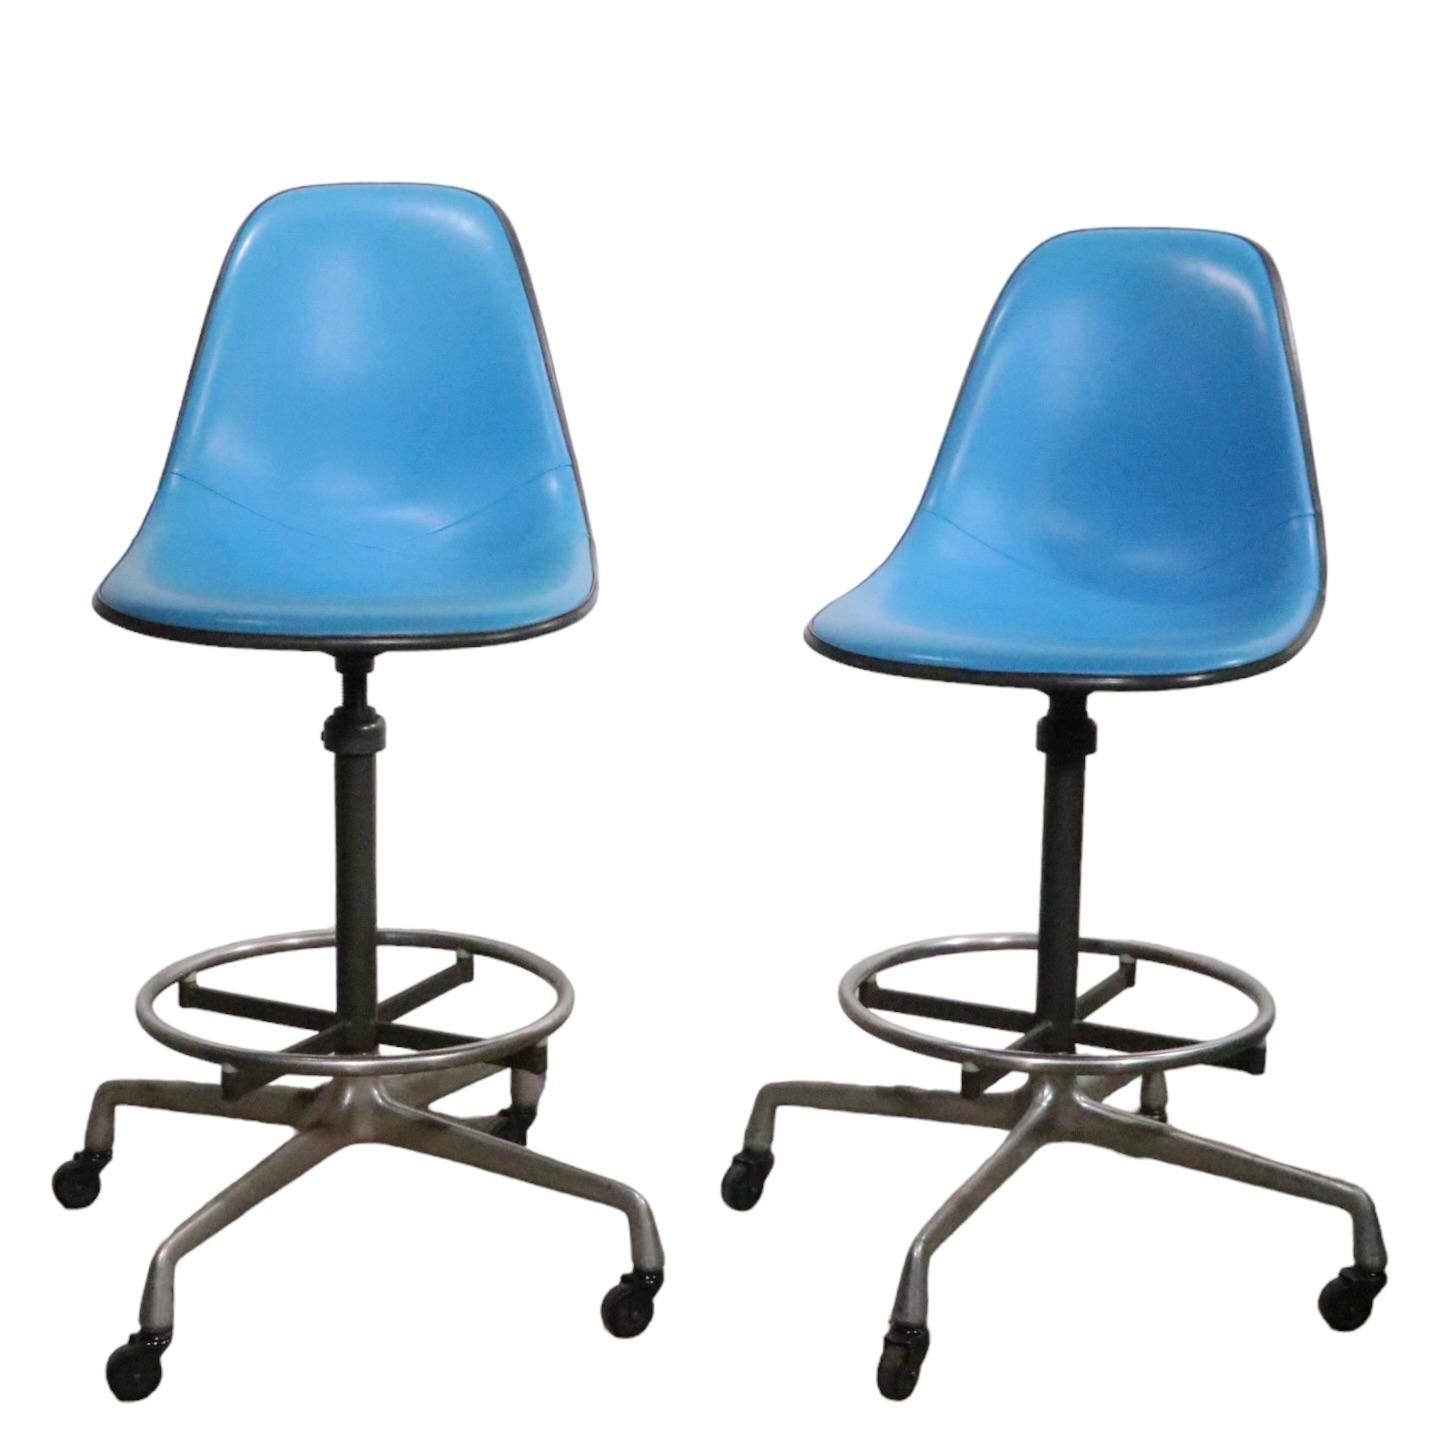 Ein Paar von Eames entworfene Hocker, hergestellt von Herman Miller, ca....
Die Hocker haben leuchtend blaue Vinylsitze, hellgraue Fiberglasschalen, graue vertikale Stahlsäulen und ein klassisches Aluminium-Universalgestell mit originalen